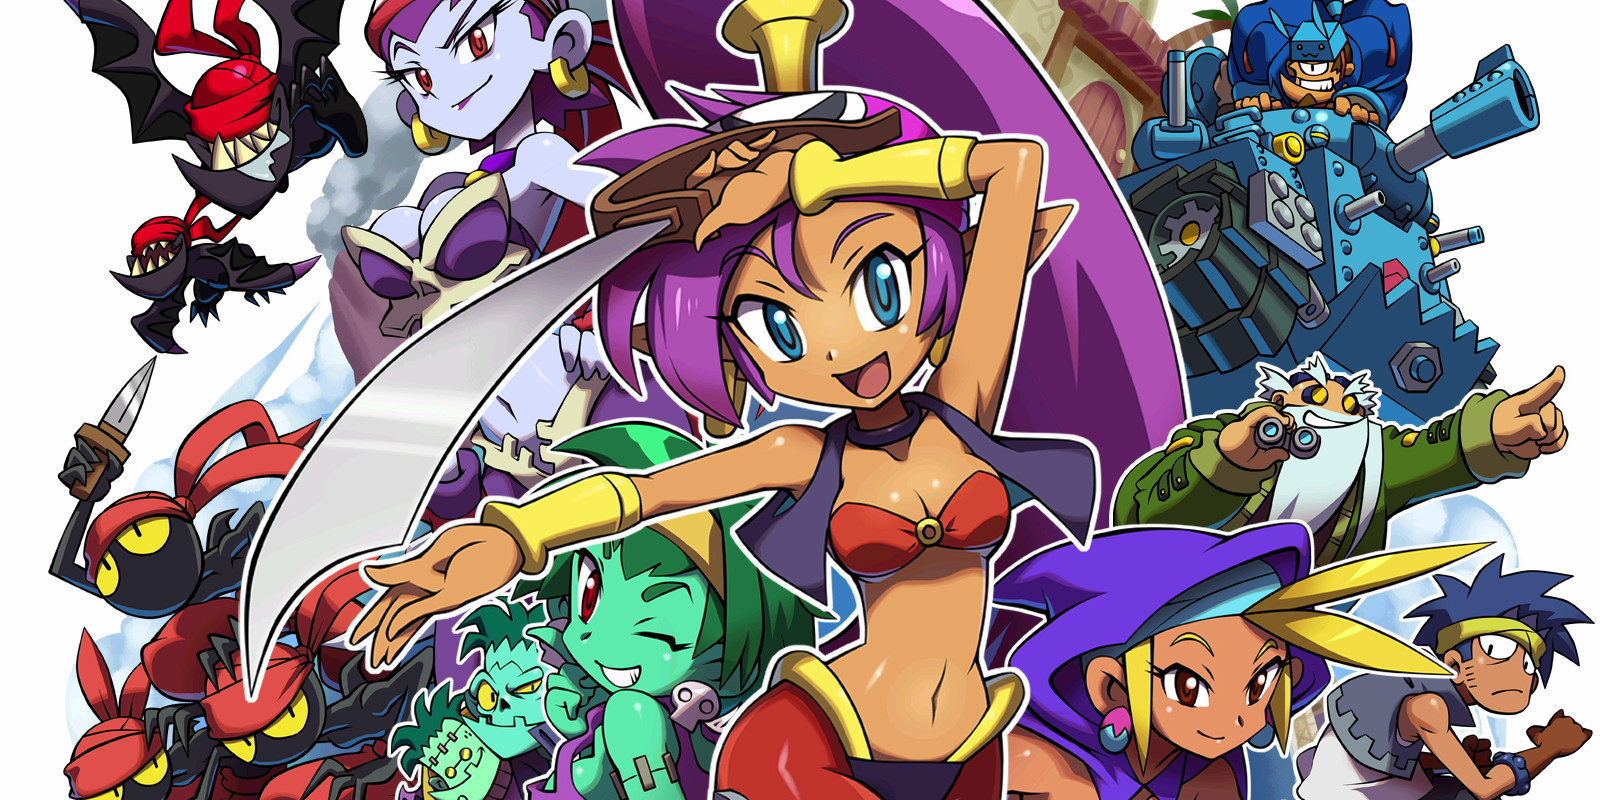 'Shantae' tuvo problemas para encontrar distribuidor al estar protagonizado por una mujer